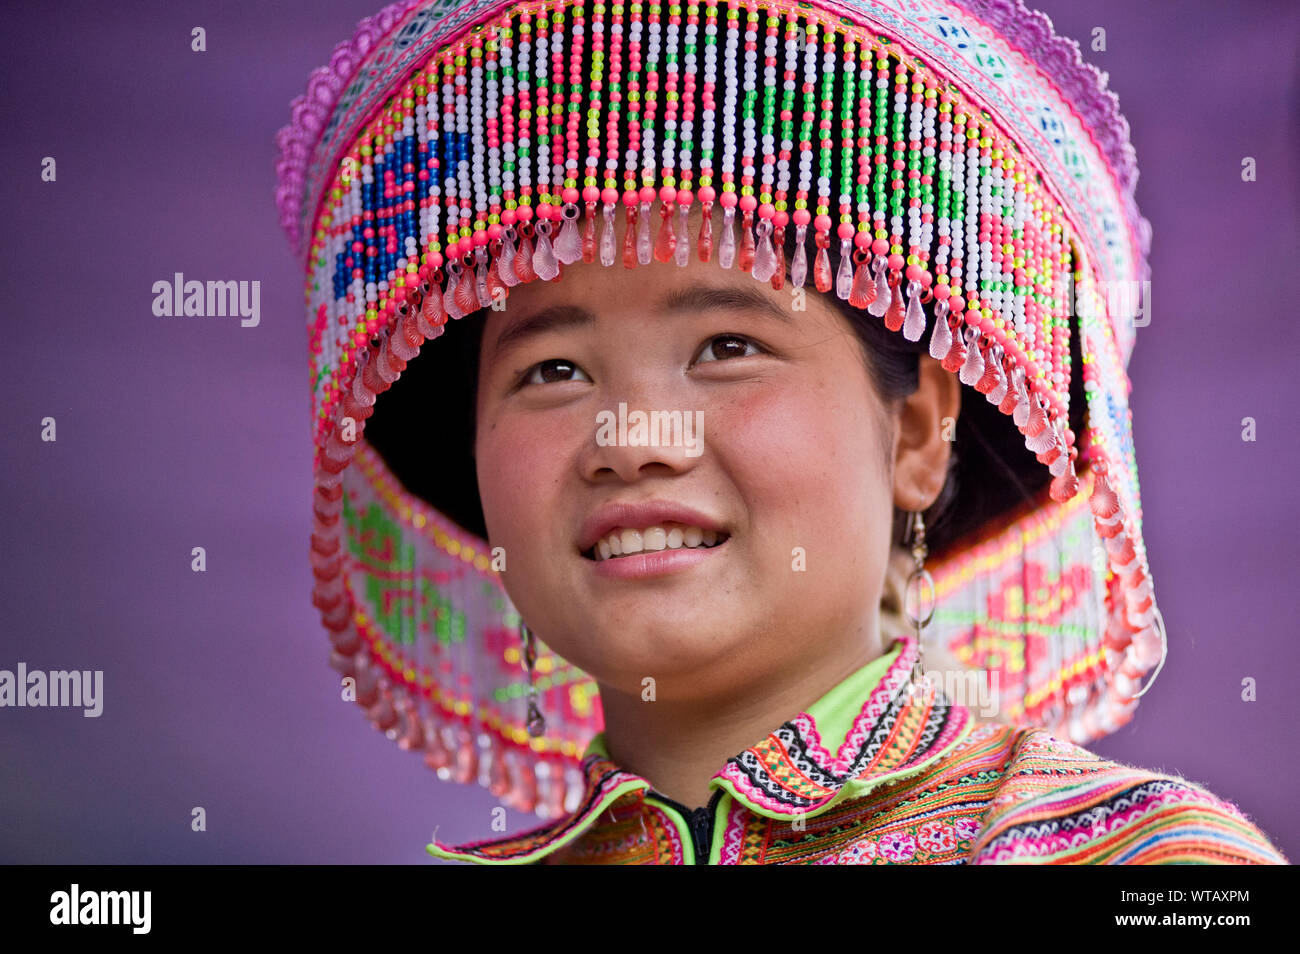 Les jeunes autochtones dame Hmong traditionnelle portant des vêtements colorés Banque D'Images